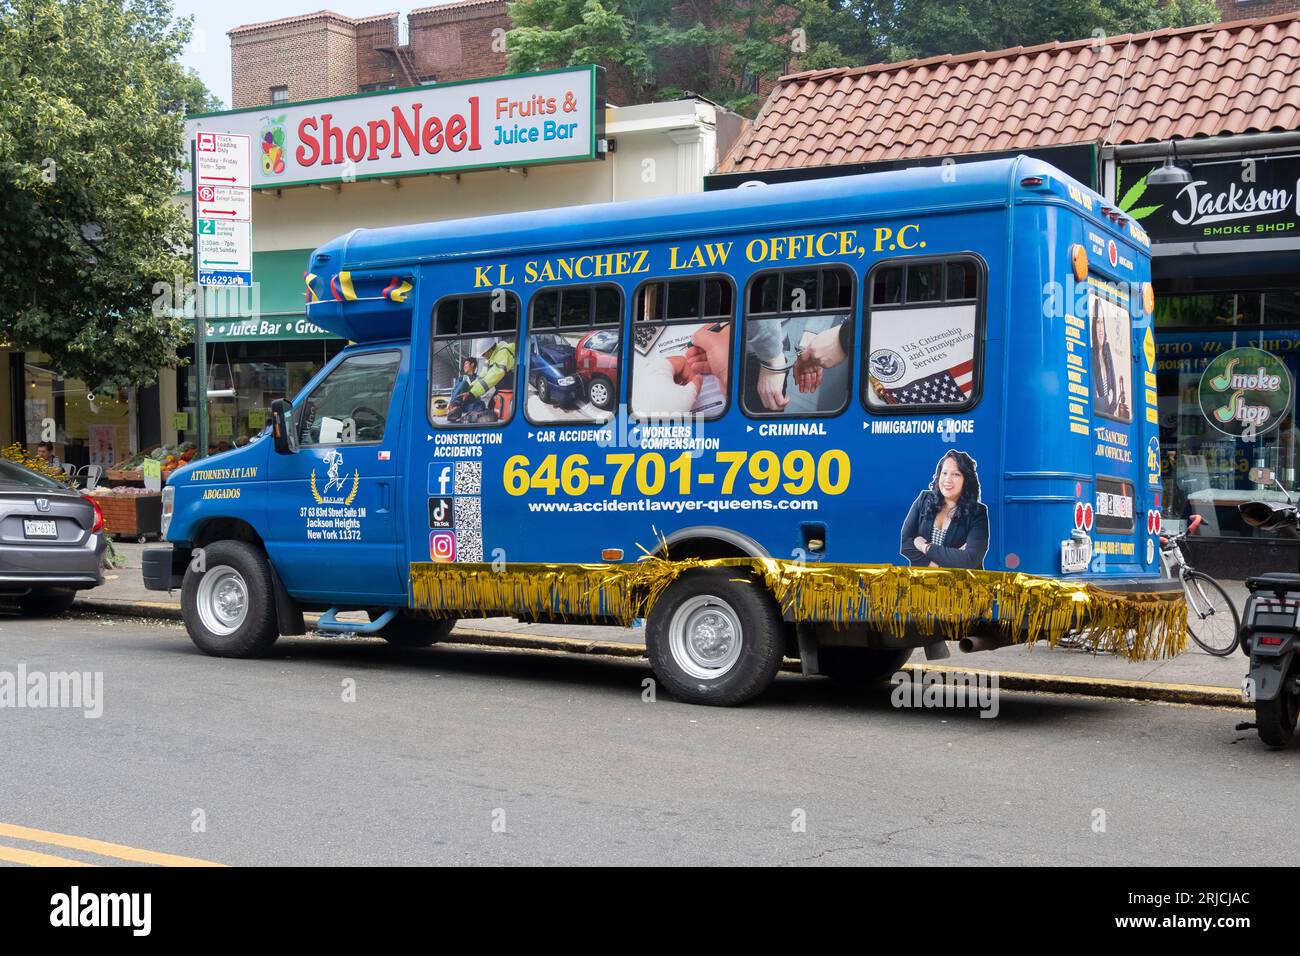 Ein mobiles Büro für Minibusse für K L Sanchez, eine Rechtsanwältin, die sich auf Verletzungen spezialisiert hat. Geparkt in Jackson Heights, Queens, New York. Stockfoto